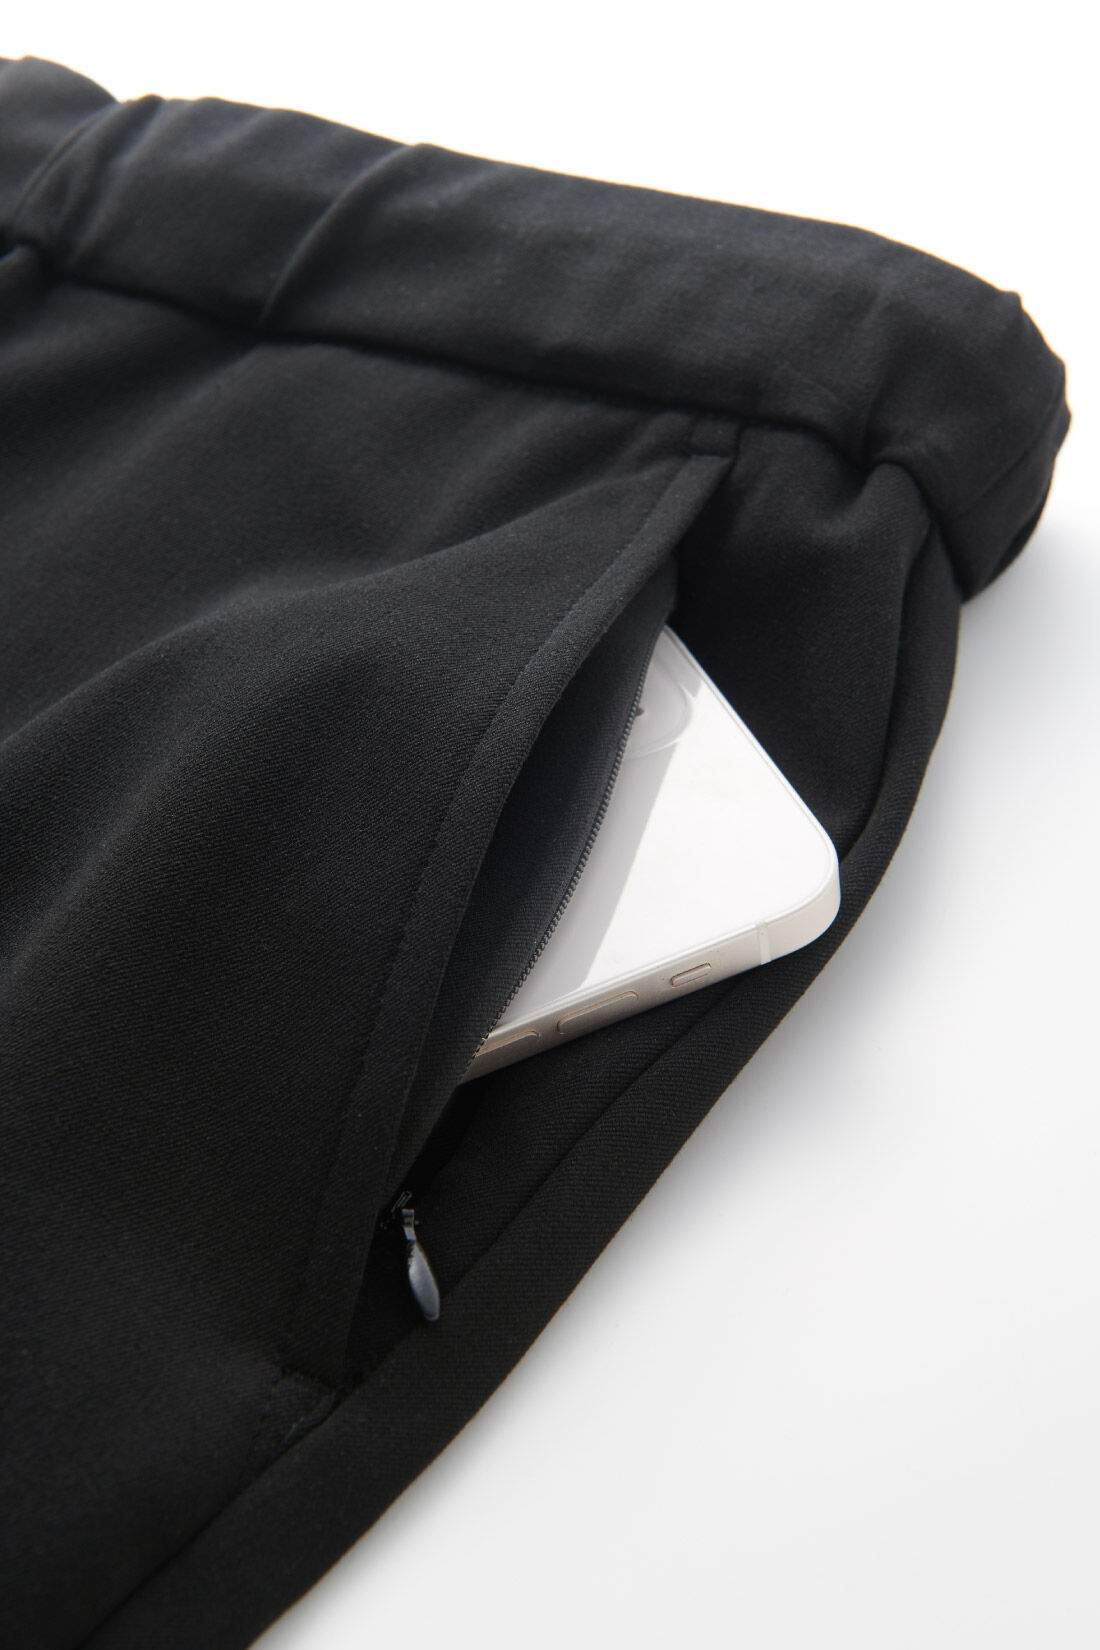 IEDIT[イディット]　いつまでもキレイな黒が続く 純黒プルオンスマートテーパードメンズパンツ〈ブラック〉|フロントサイドの左側ポケットには、スマホを入れるのにぴったりなファスナー仕様の隠しポケット付き。